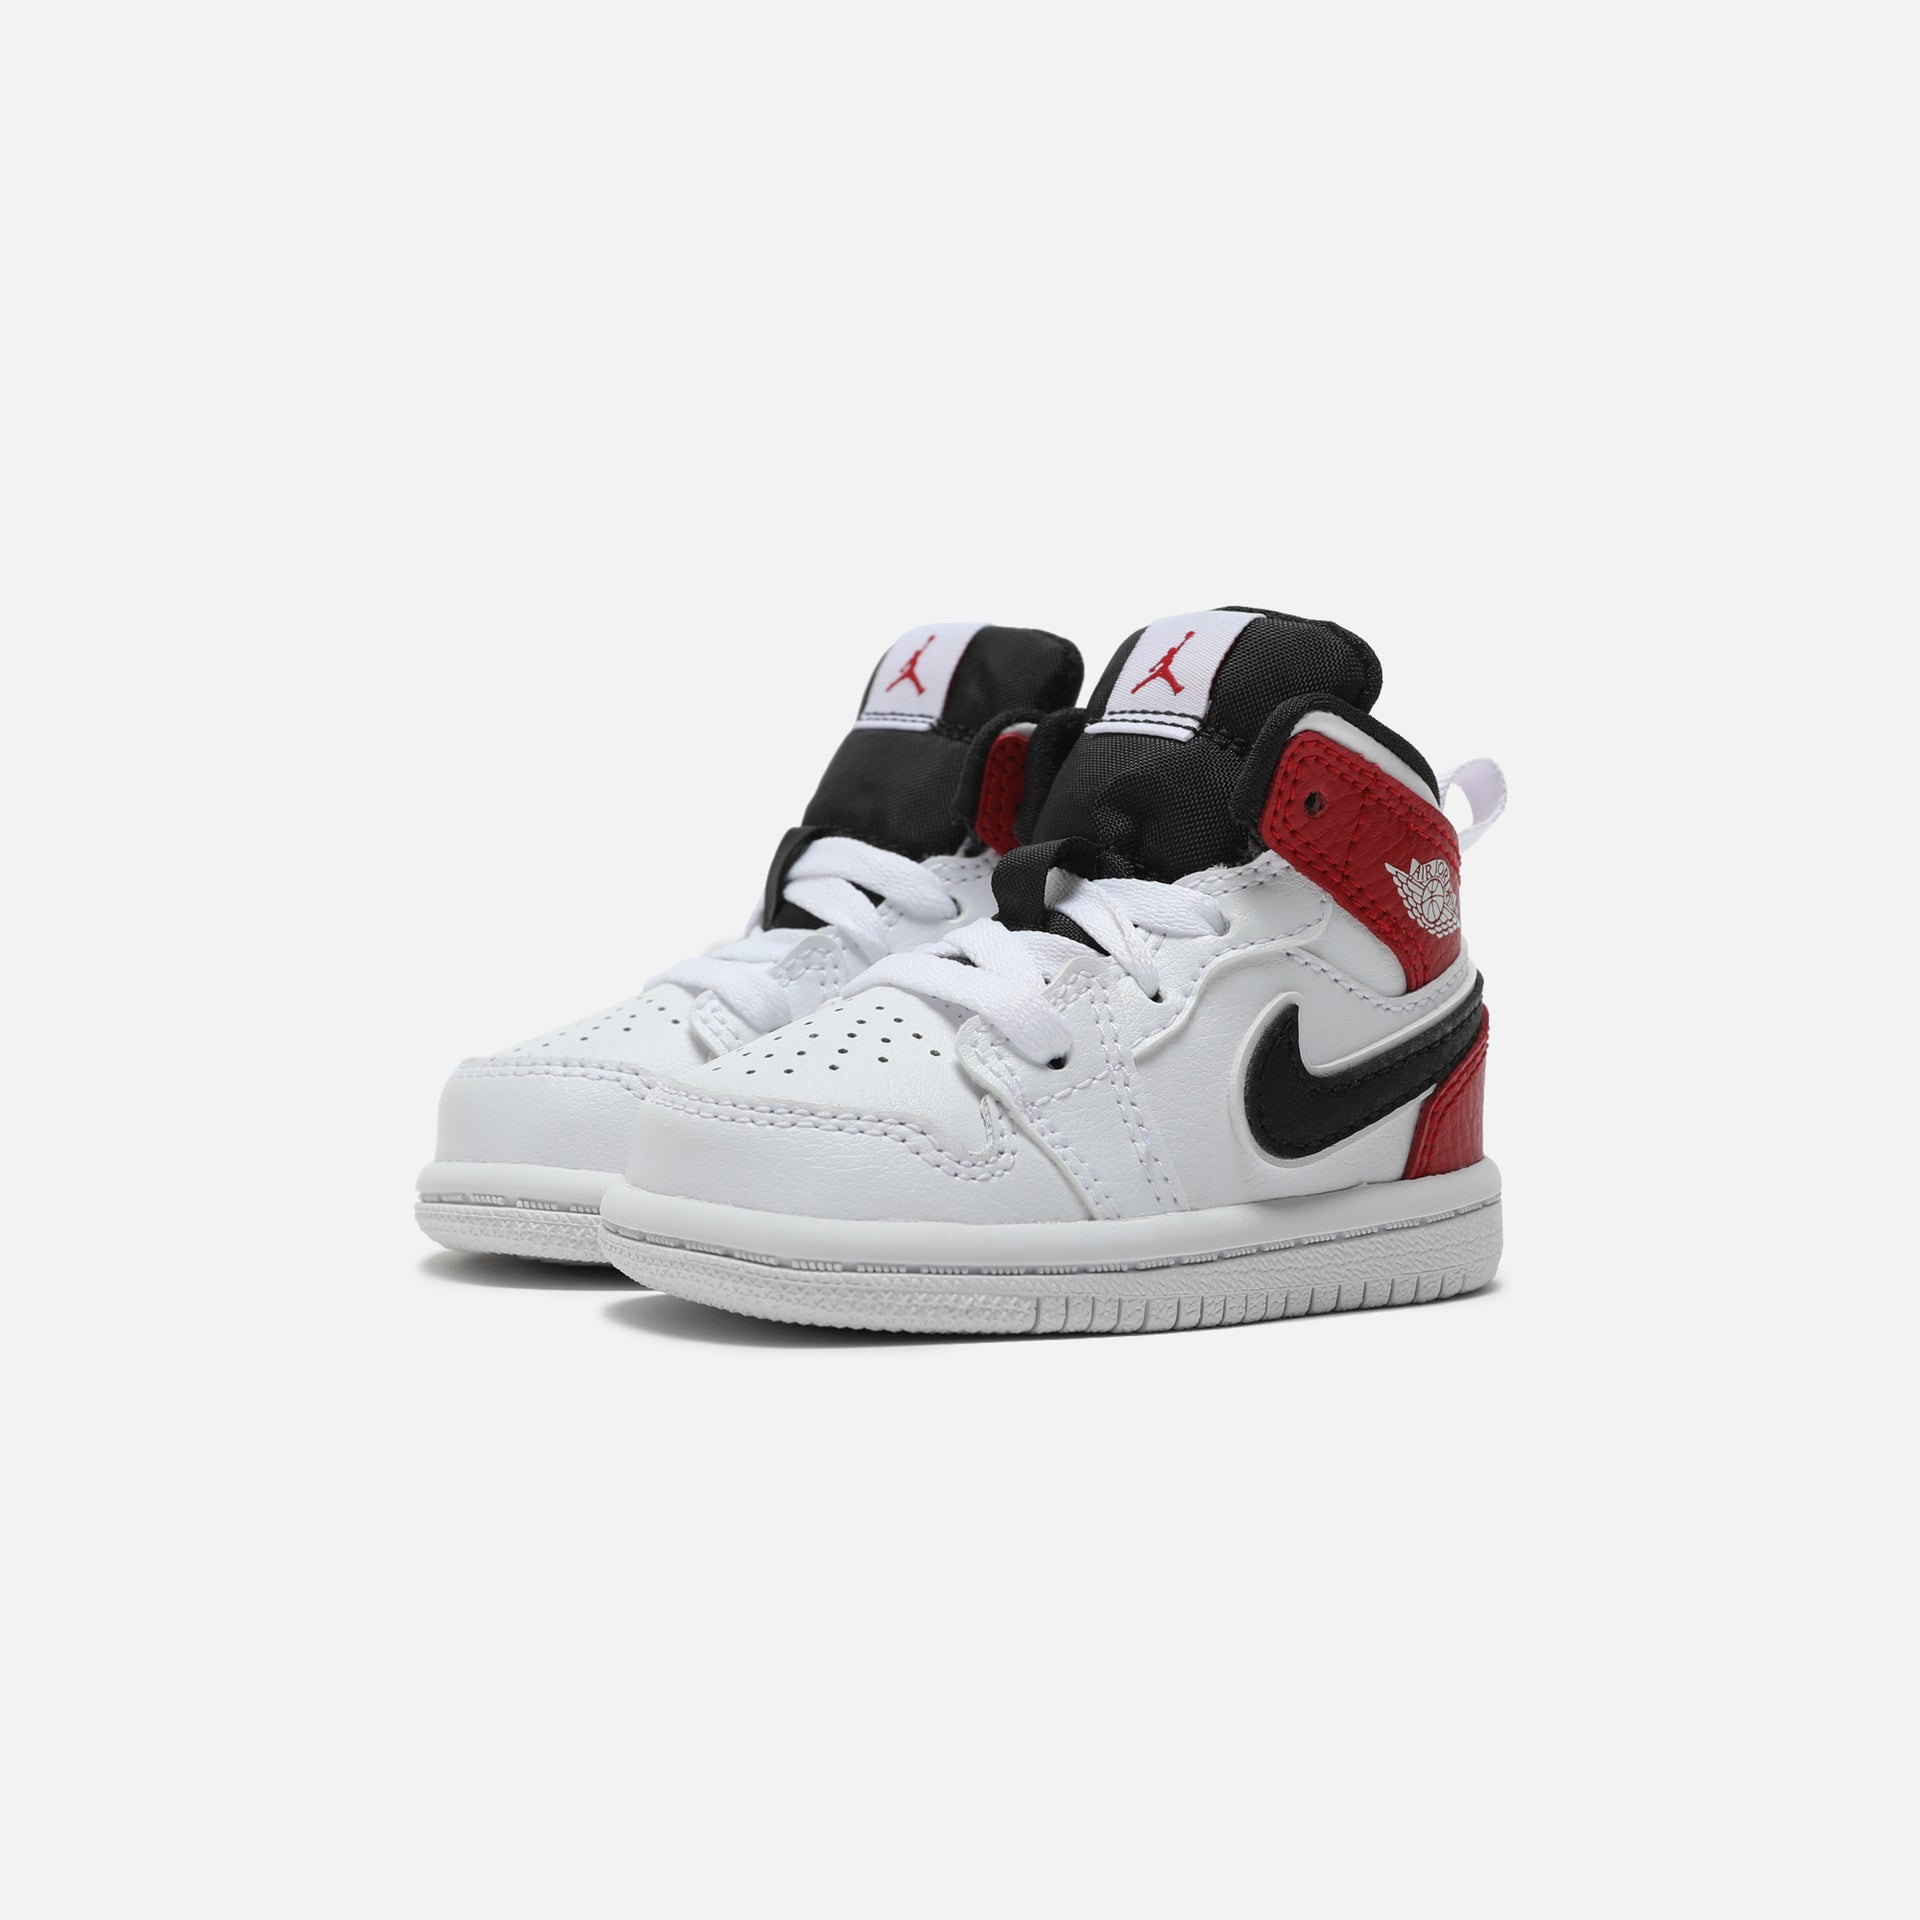 Nike Air Jordan 1 Mid Toddler - White / Black / Gym Red